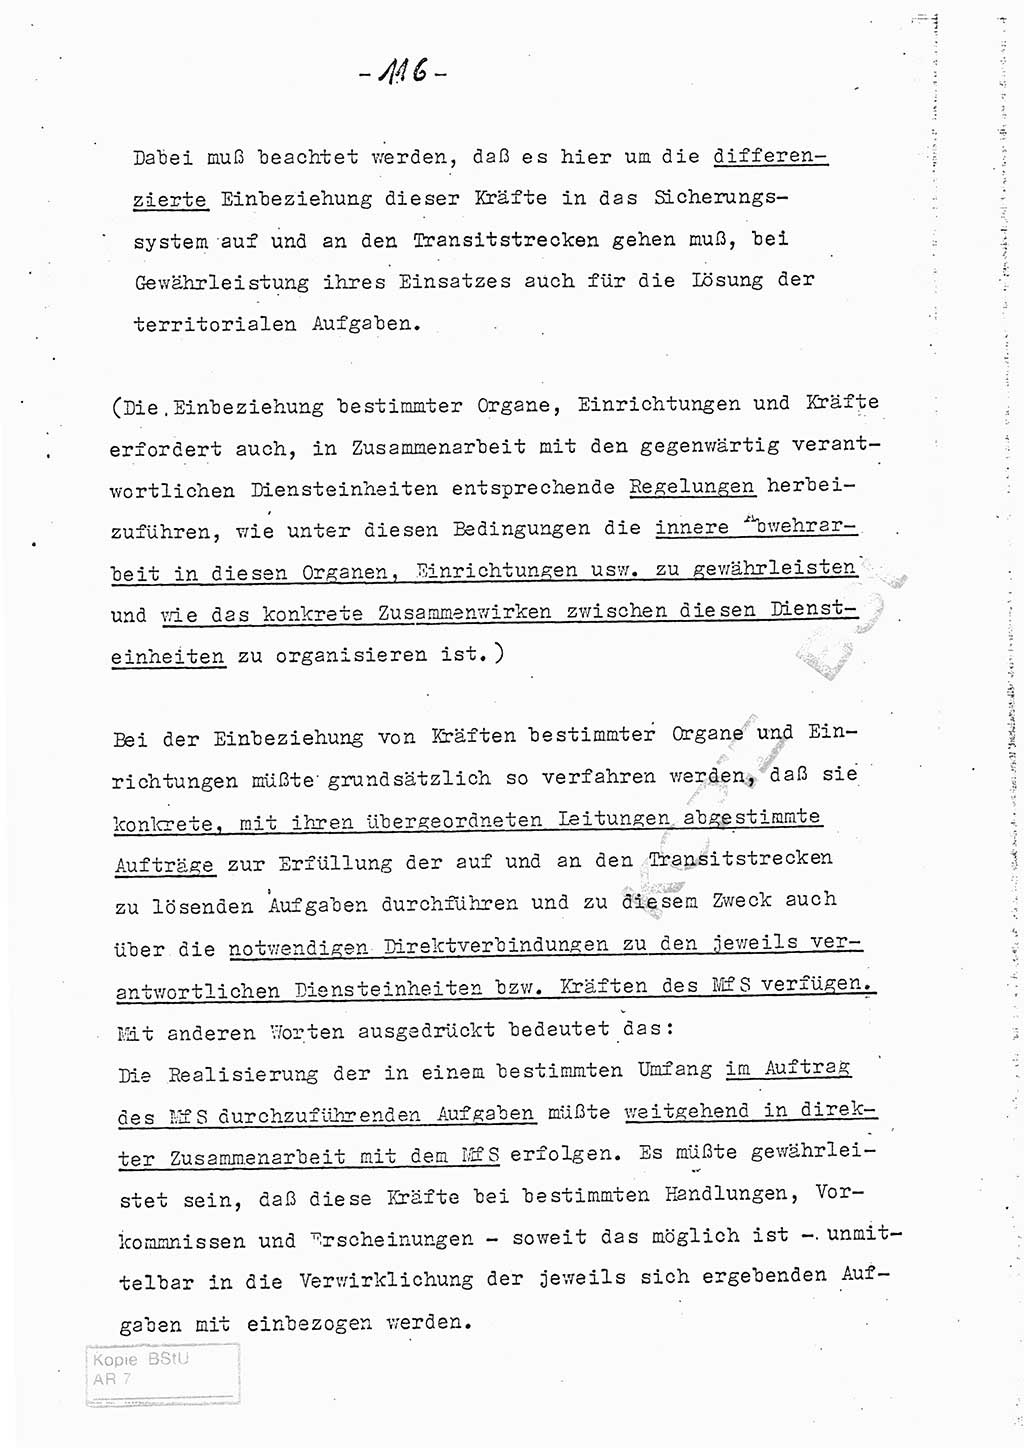 Referat (Entwurf) des Genossen Minister (Generaloberst Erich Mielke) auf der Dienstkonferenz 1972, Ministerium für Staatssicherheit (MfS) [Deutsche Demokratische Republik (DDR)], Der Minister, Geheime Verschlußsache (GVS) 008-150/72, Berlin 25.2.1972, Seite 116 (Ref. Entw. DK MfS DDR Min. GVS 008-150/72 1972, S. 116)